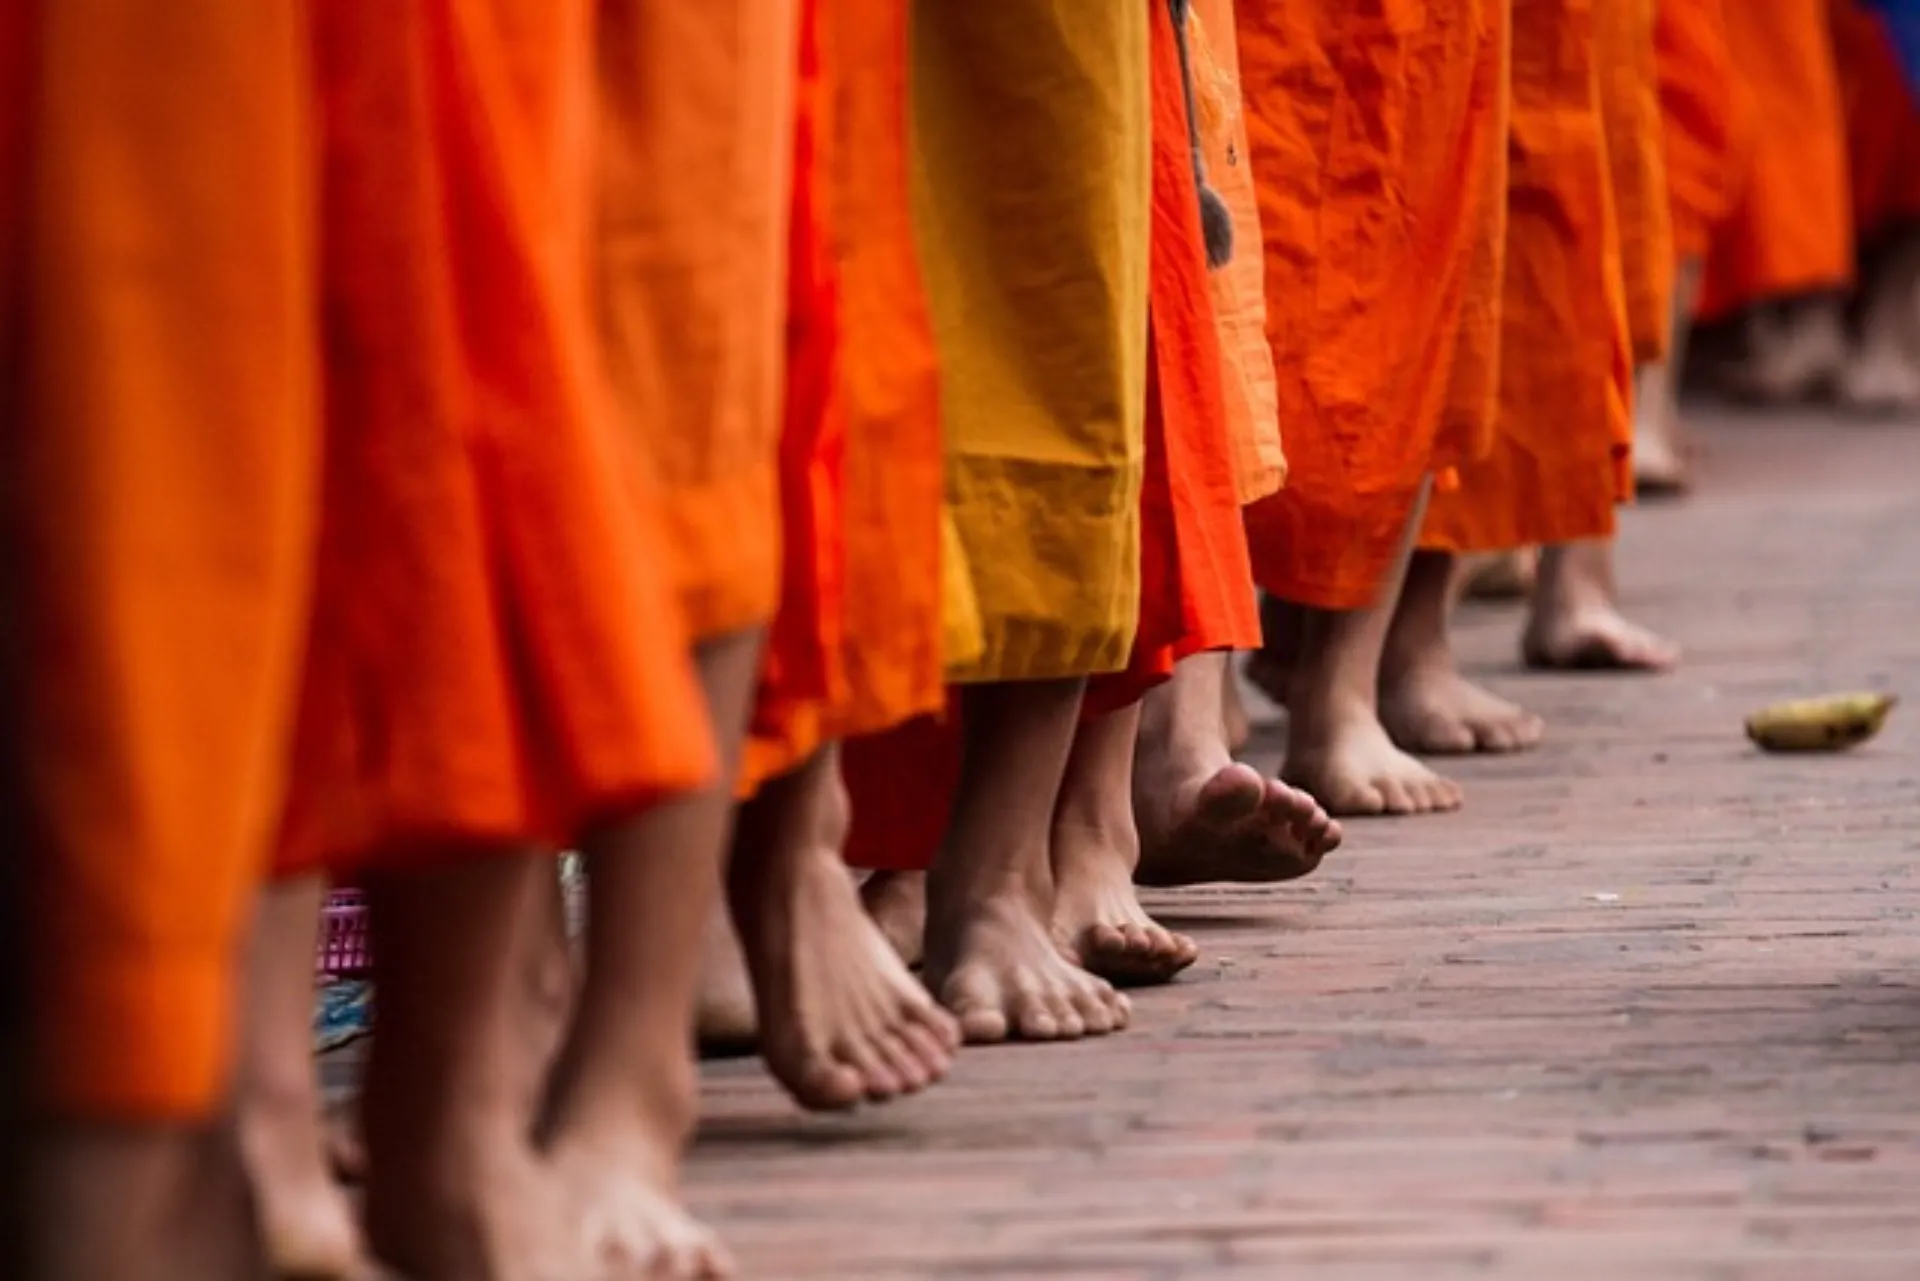 נזירים צועדים בלואנג פראבנג, לאוס בדרכם לקבל מנחות.